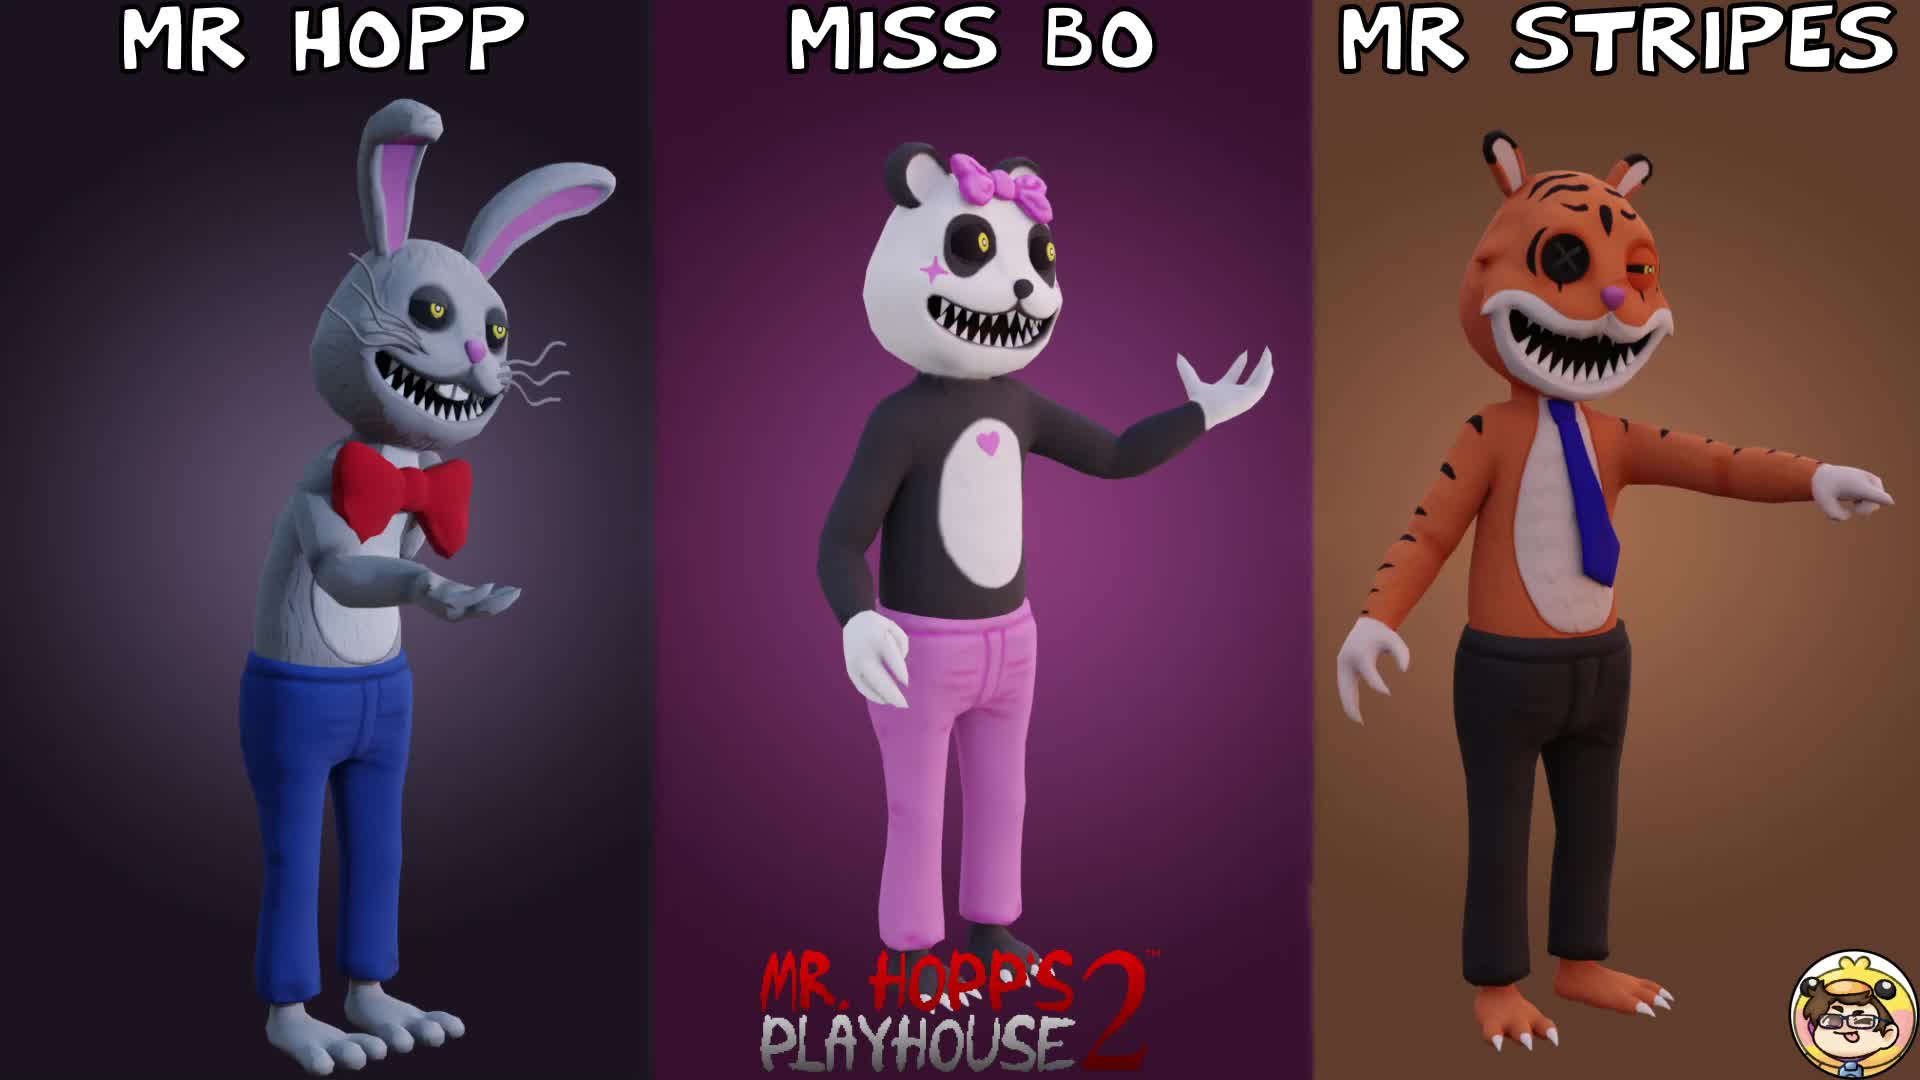 Mr hopp characters